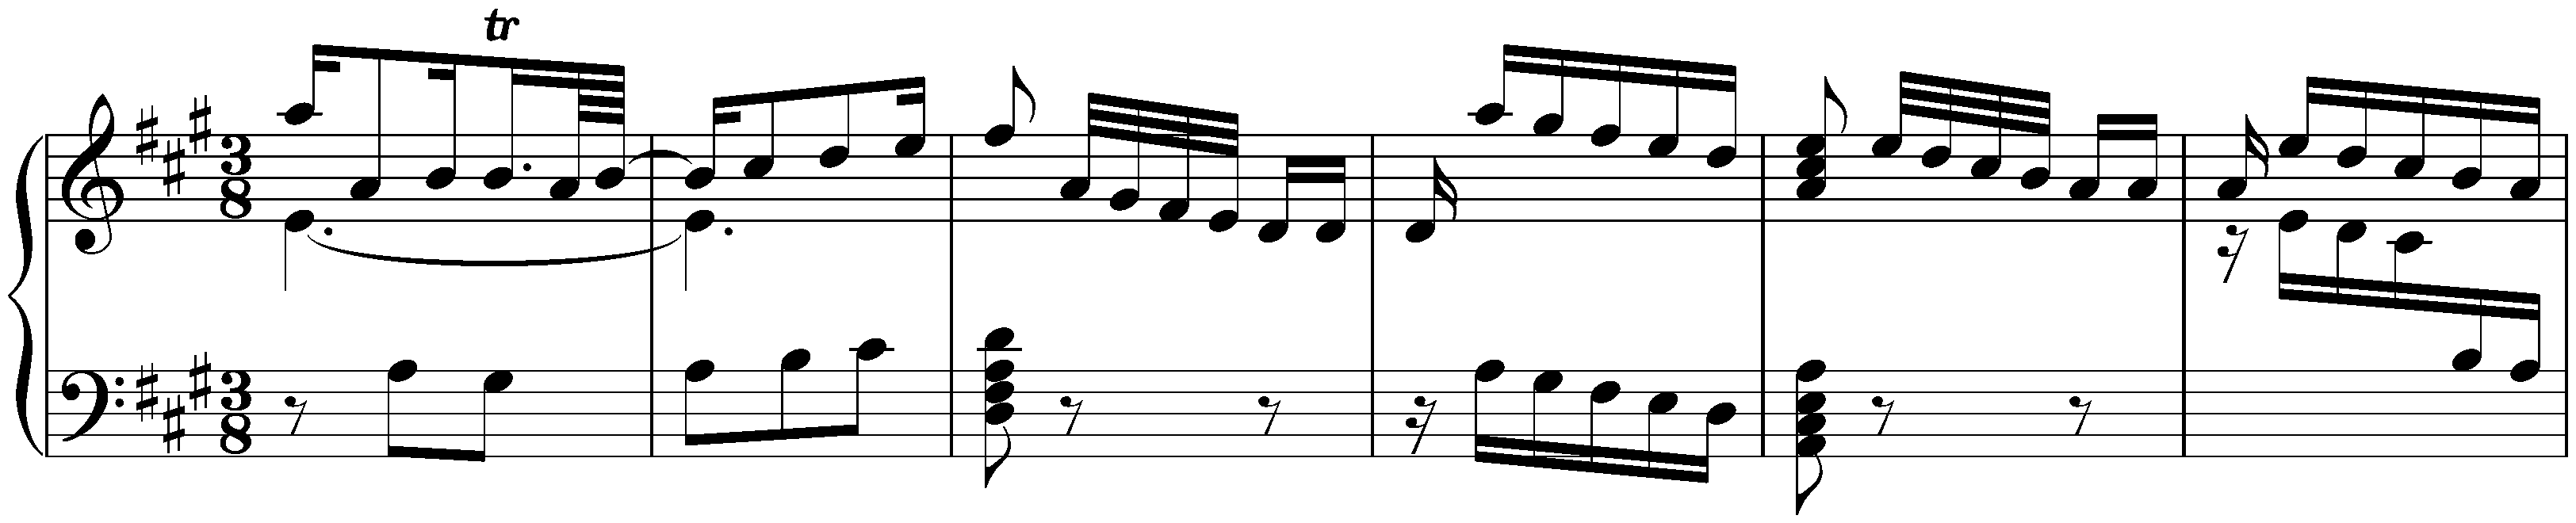 Sonatas found in Valladolid; 3. A major